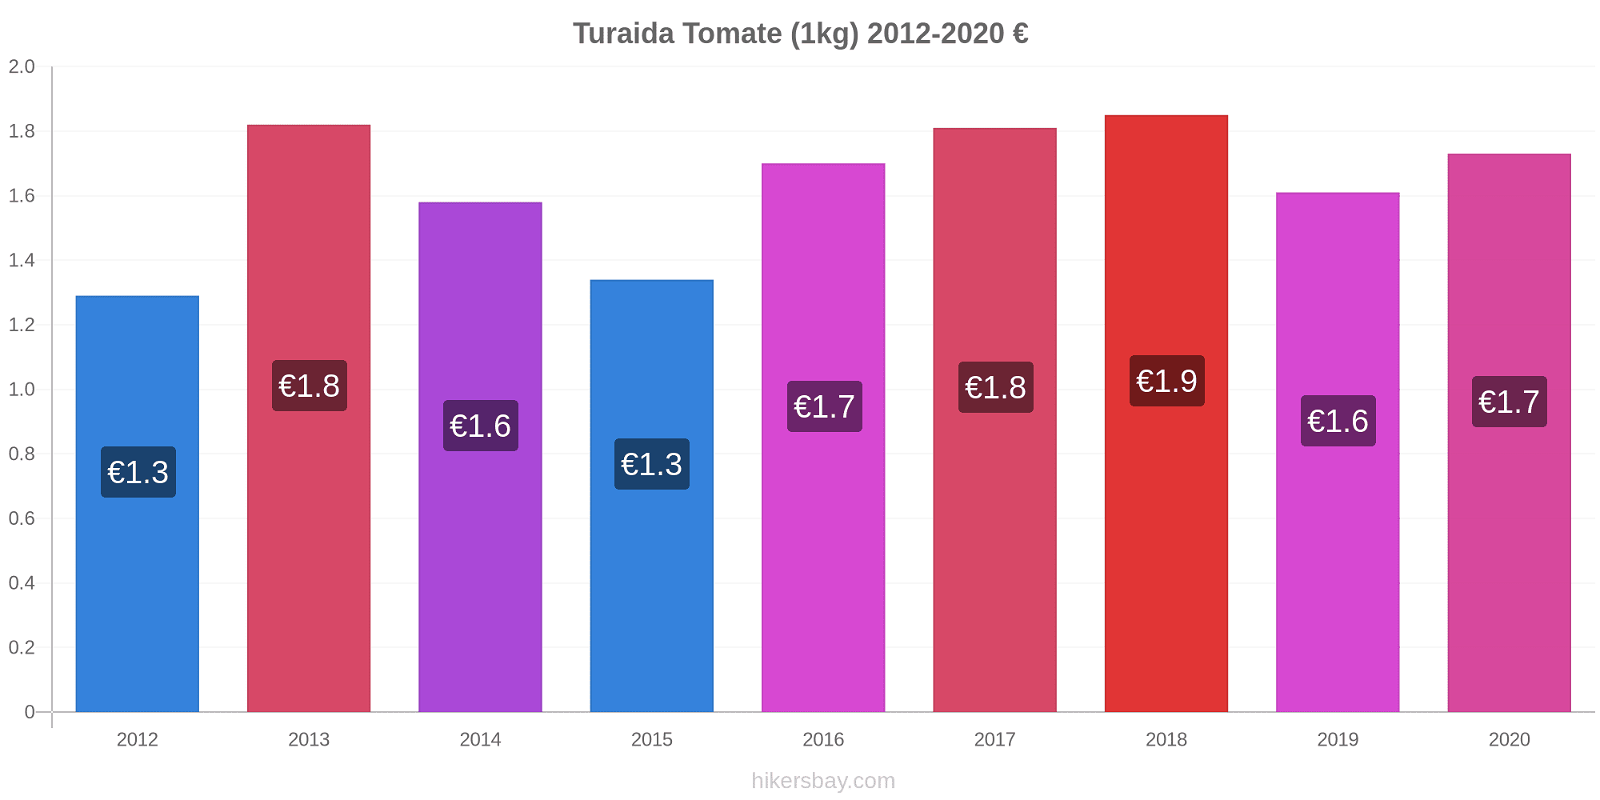 Turaida cambios de precios Tomate (1kg) hikersbay.com